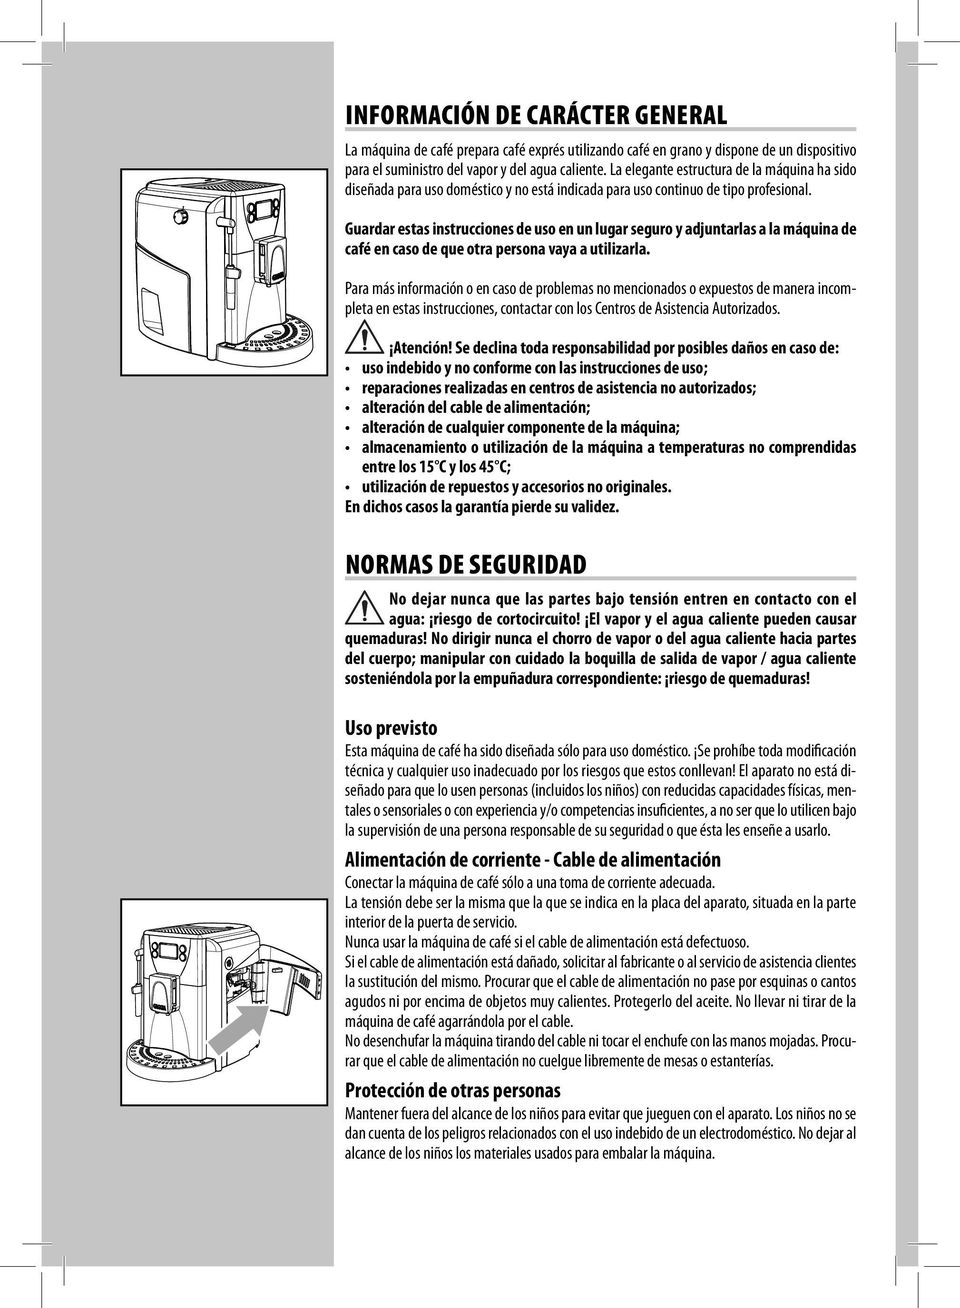 Guardar estas instrucciones de uso en un lugar seguro y adjuntarlas a la máquina de café en caso de que otra persona vaya a utilizarla.